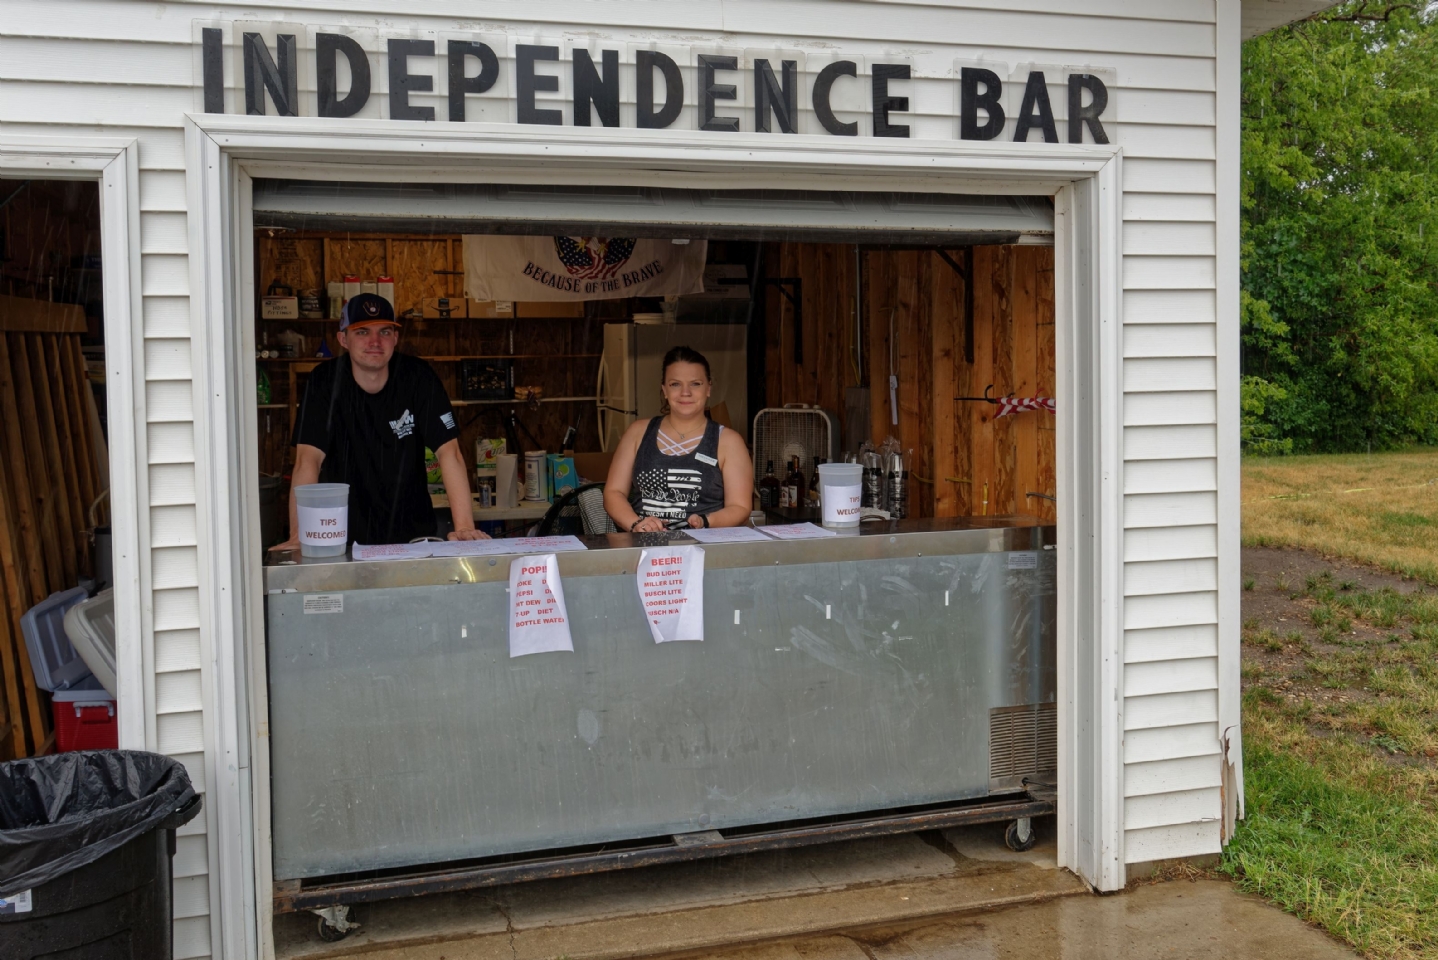 Handling Beverage Sales for Independence Day